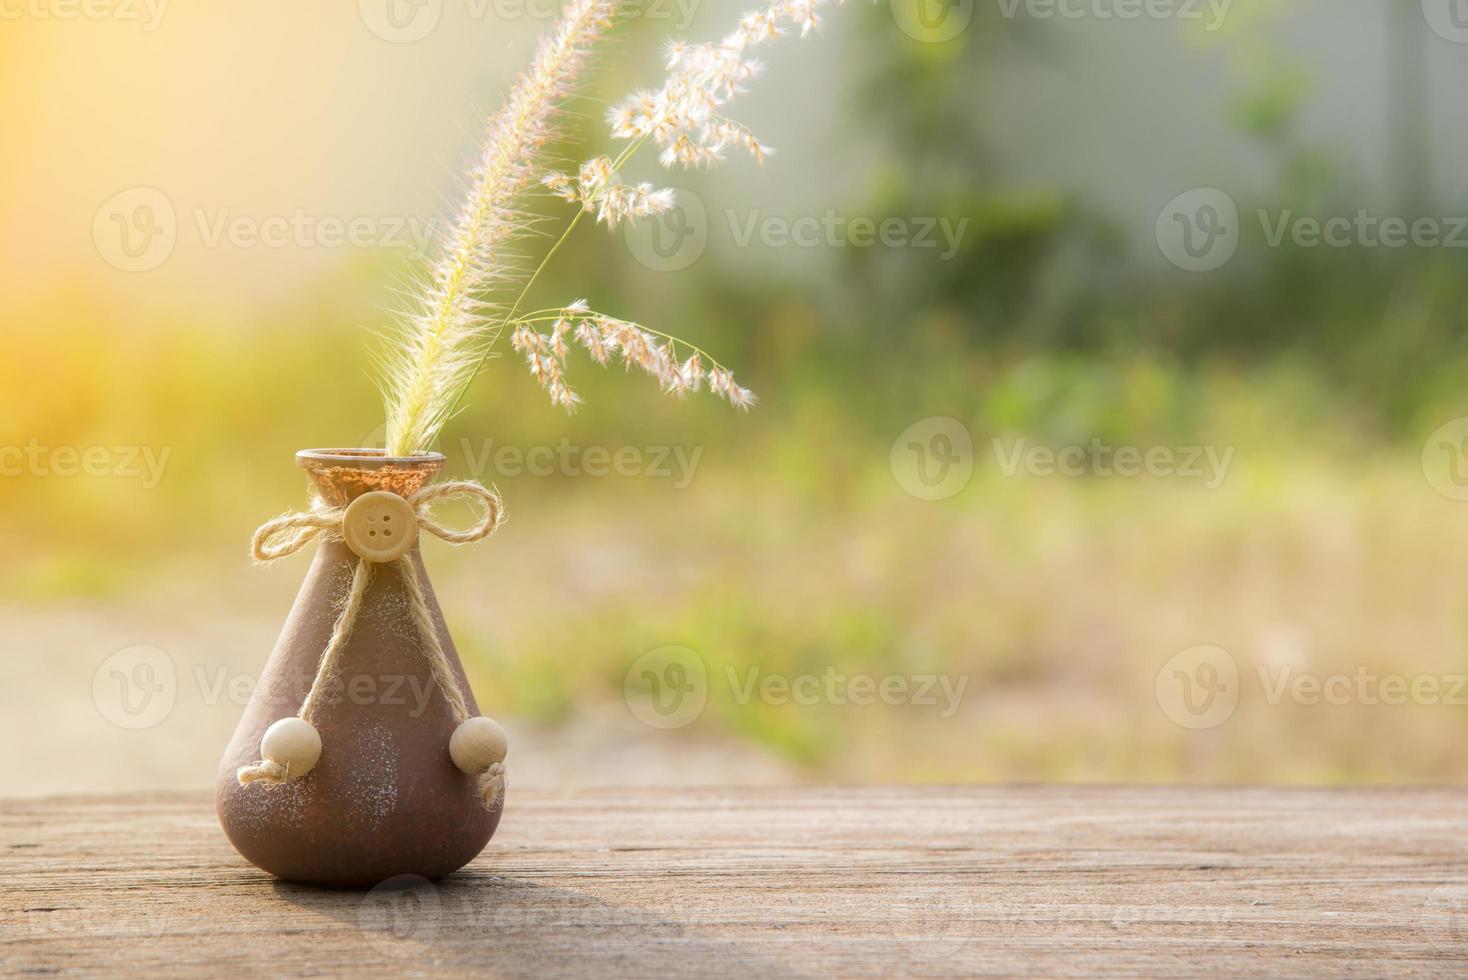 flor de grama no vaso, foco seletivo foto